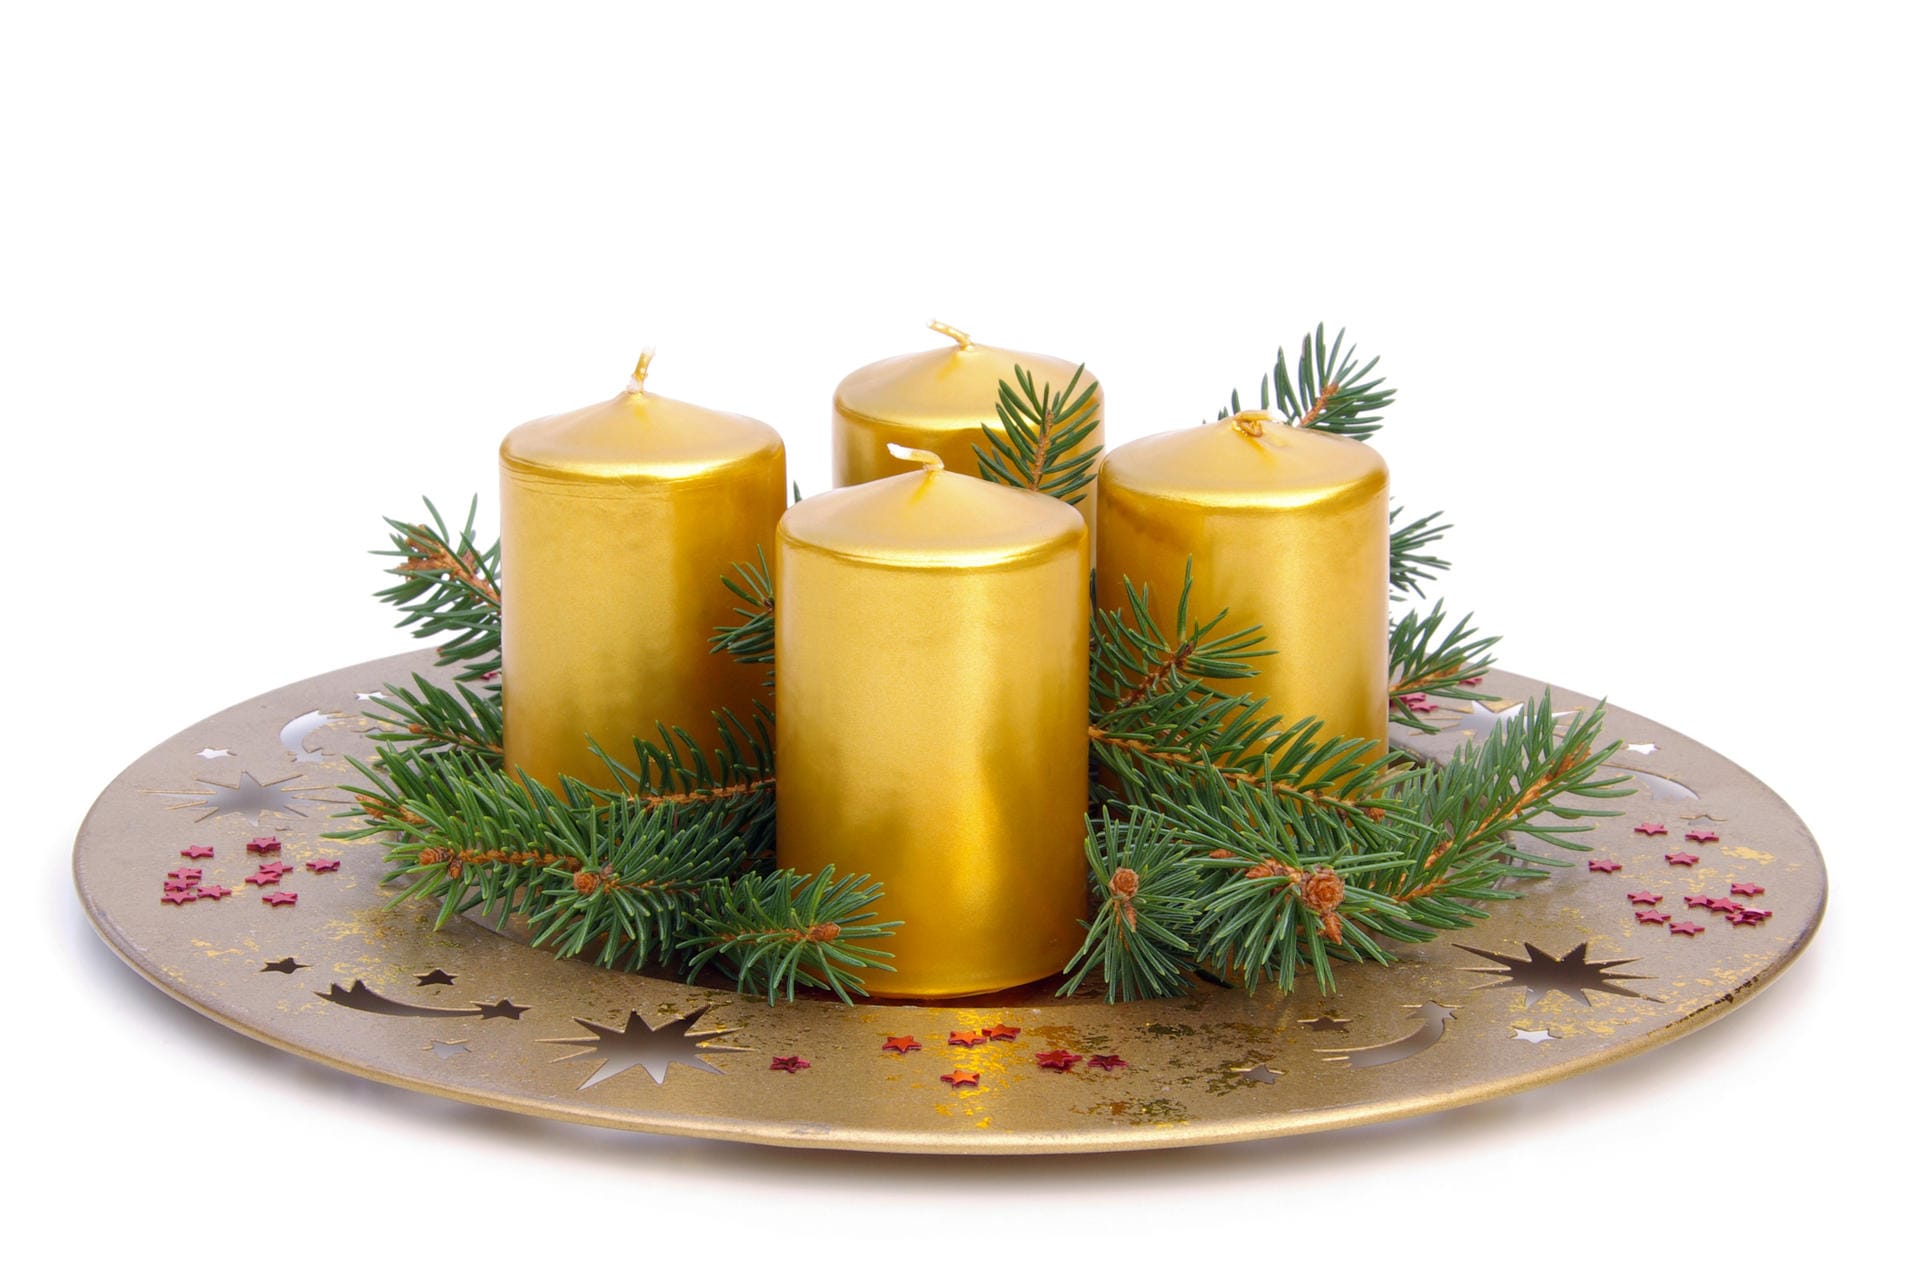 Goldener Teller mit Kerzen und Tannenzweigen: Für diejenigen, die es glänzend mögen, kommt die Kombination aus Gold und Tanne in Frage. Minimalistisch und schick zugleich ist ein weihnachtlicher Deko-Teller perfekt für die Inszenierung von Adventskerzen.